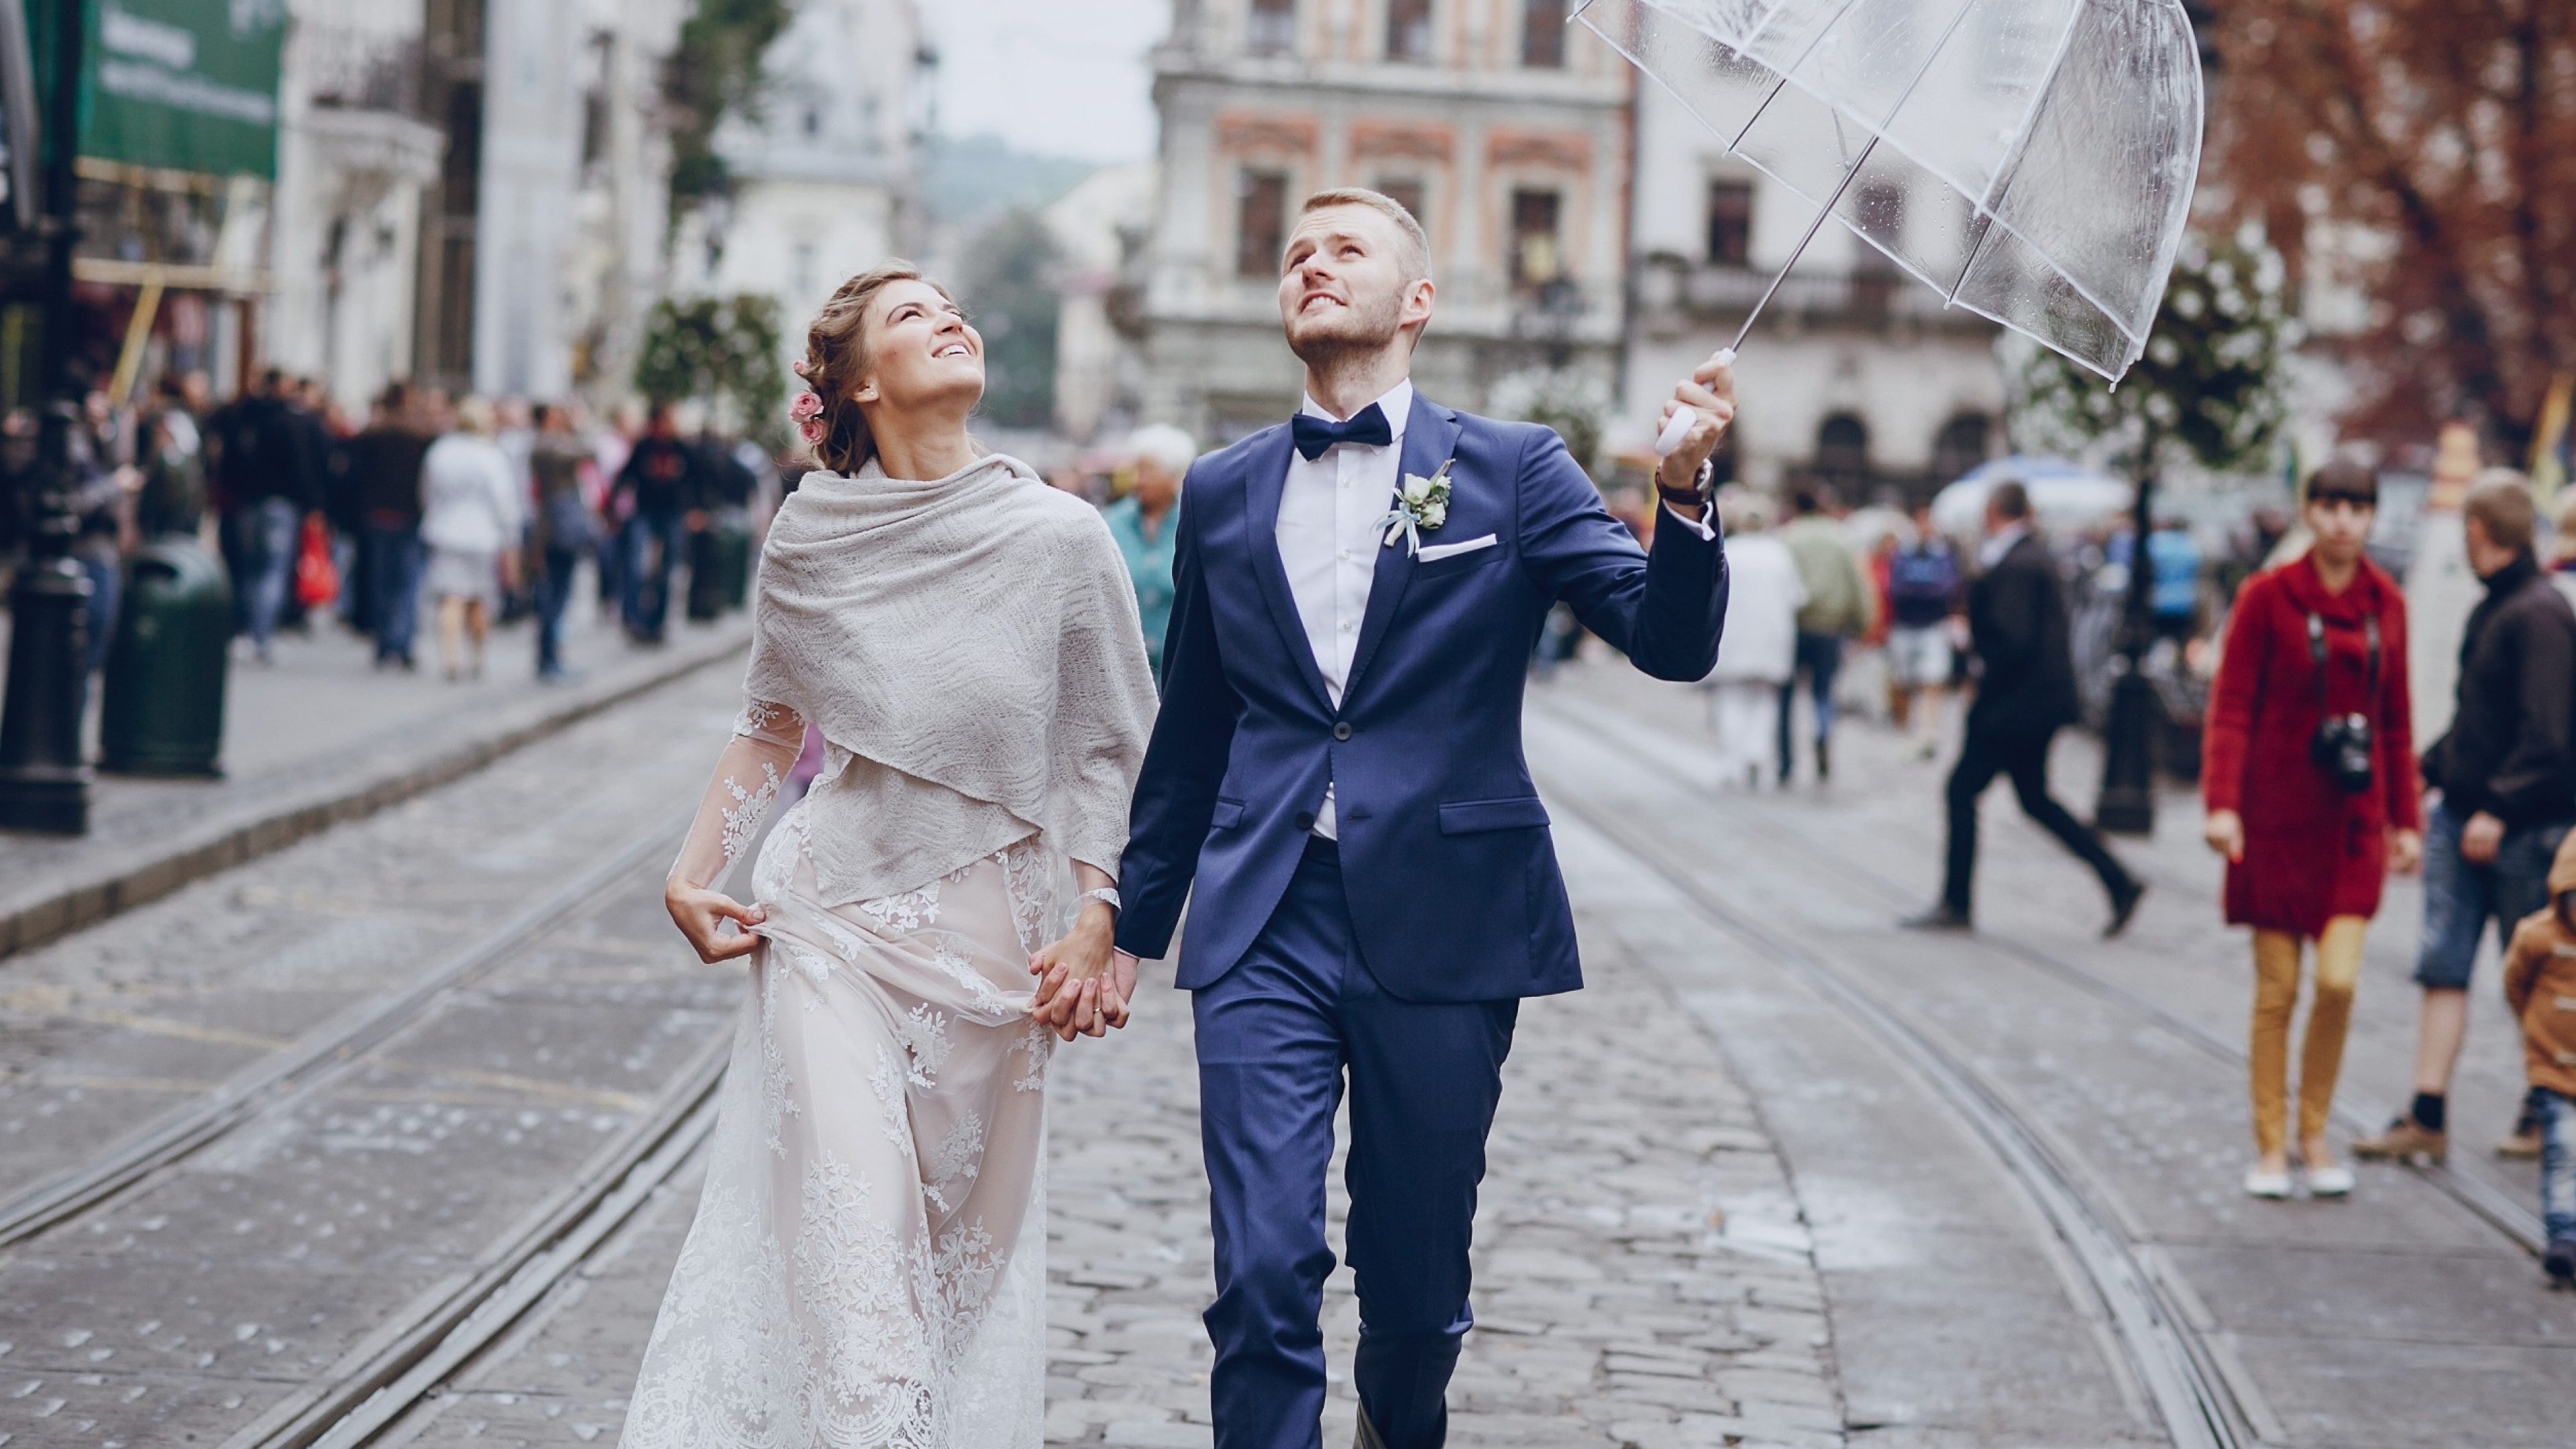 Frau und Mann stehen an ihrem Hochzeitstag im Regen und halten einen Schirm in der Hand.